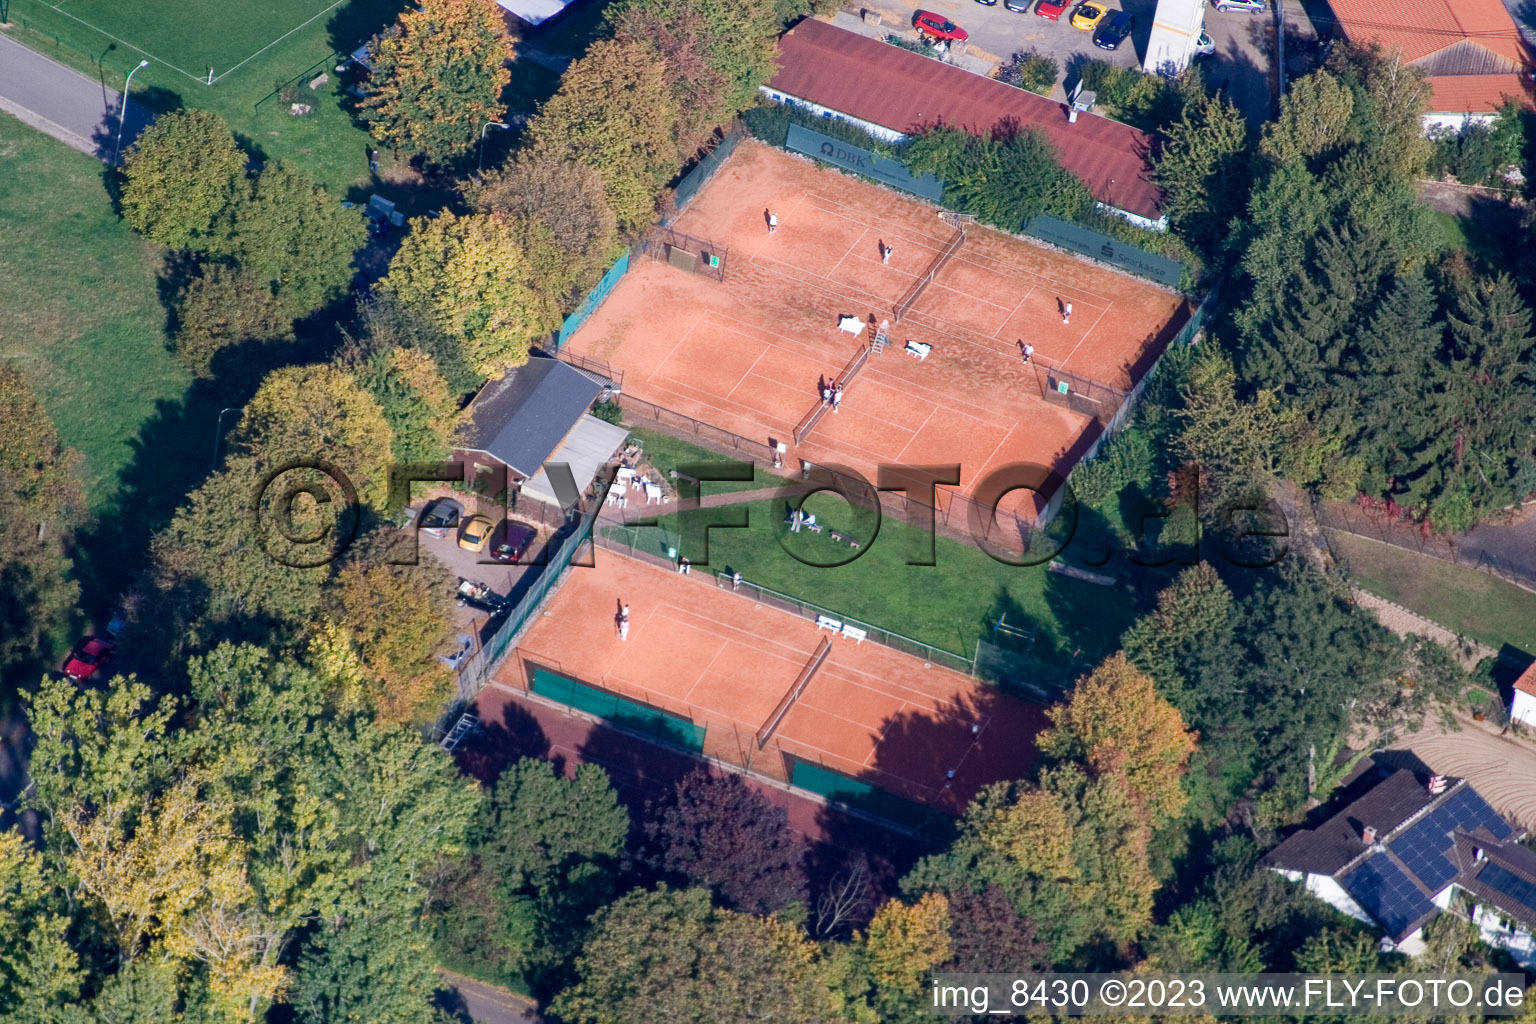 Tennis club in the district Mörzheim in Landau in der Pfalz in the state Rhineland-Palatinate, Germany